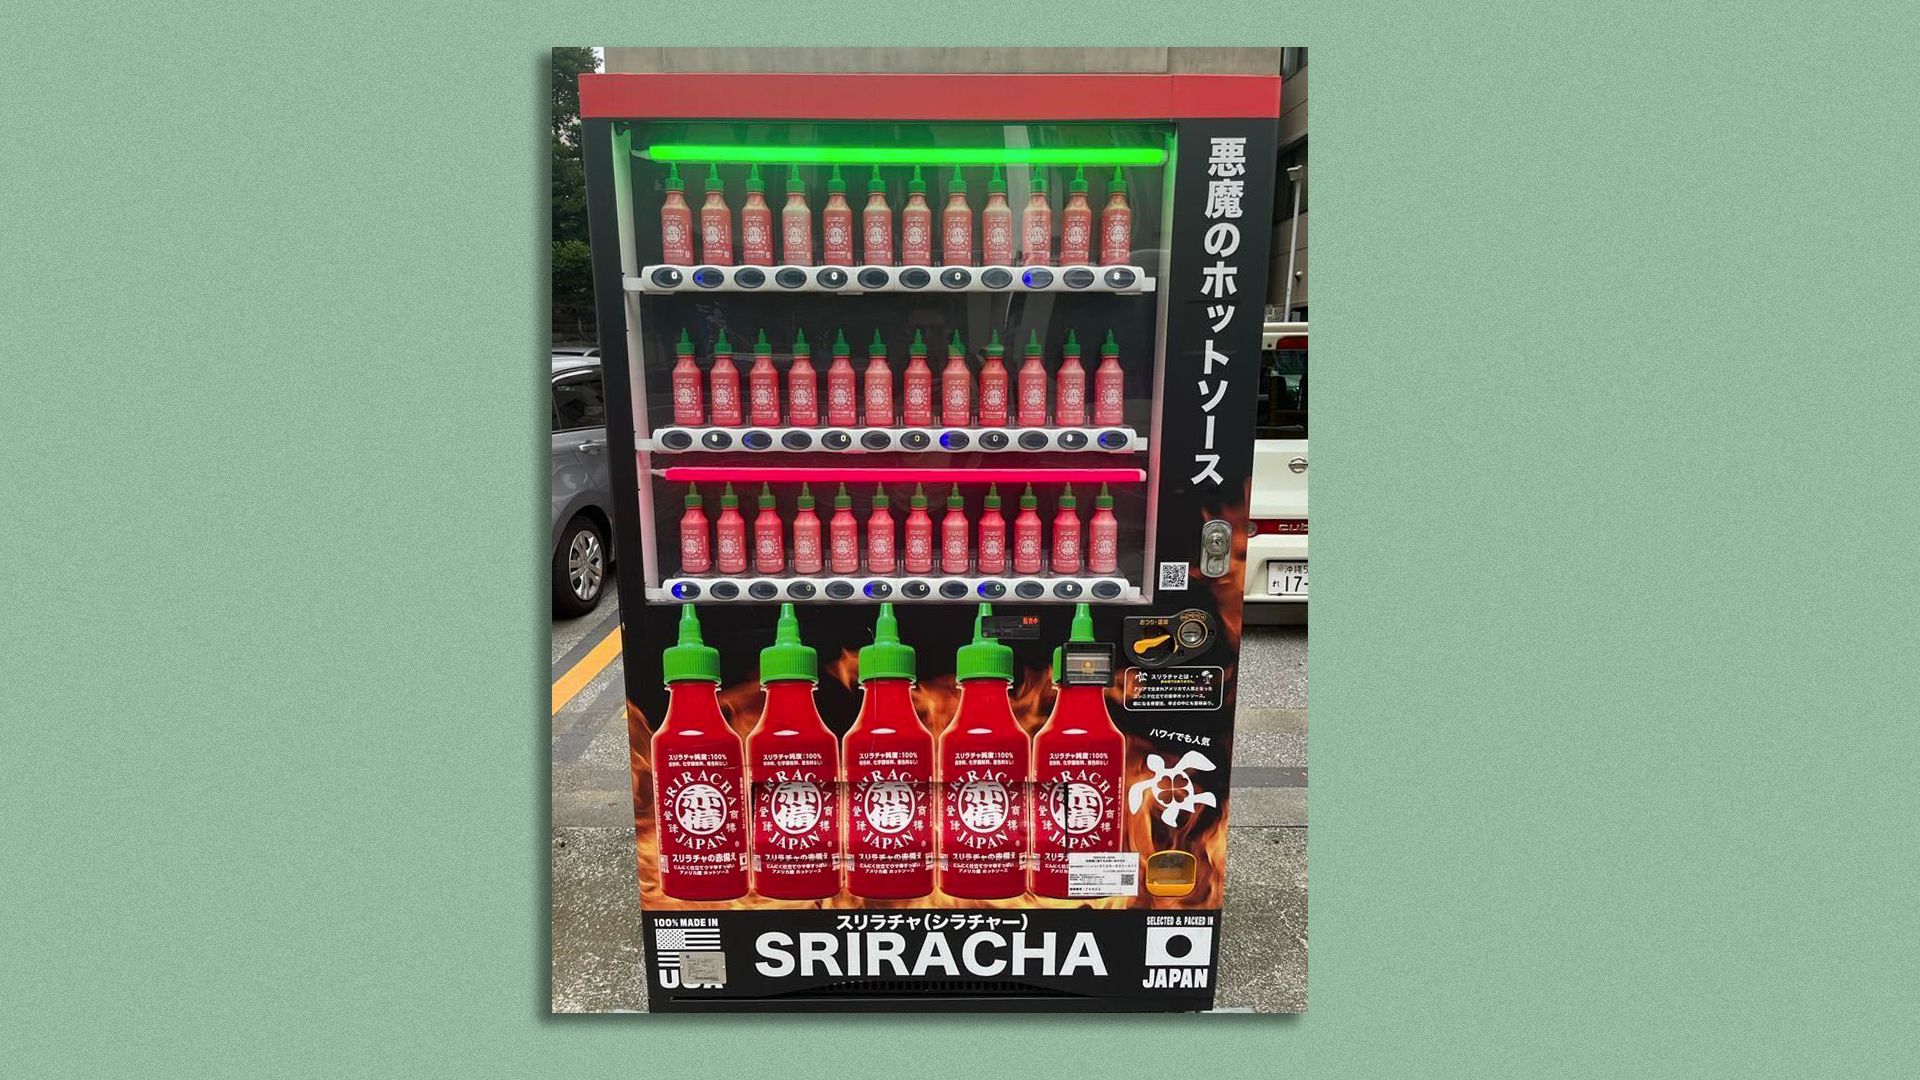 A Srirachi vending machine in Okinawa, Japan